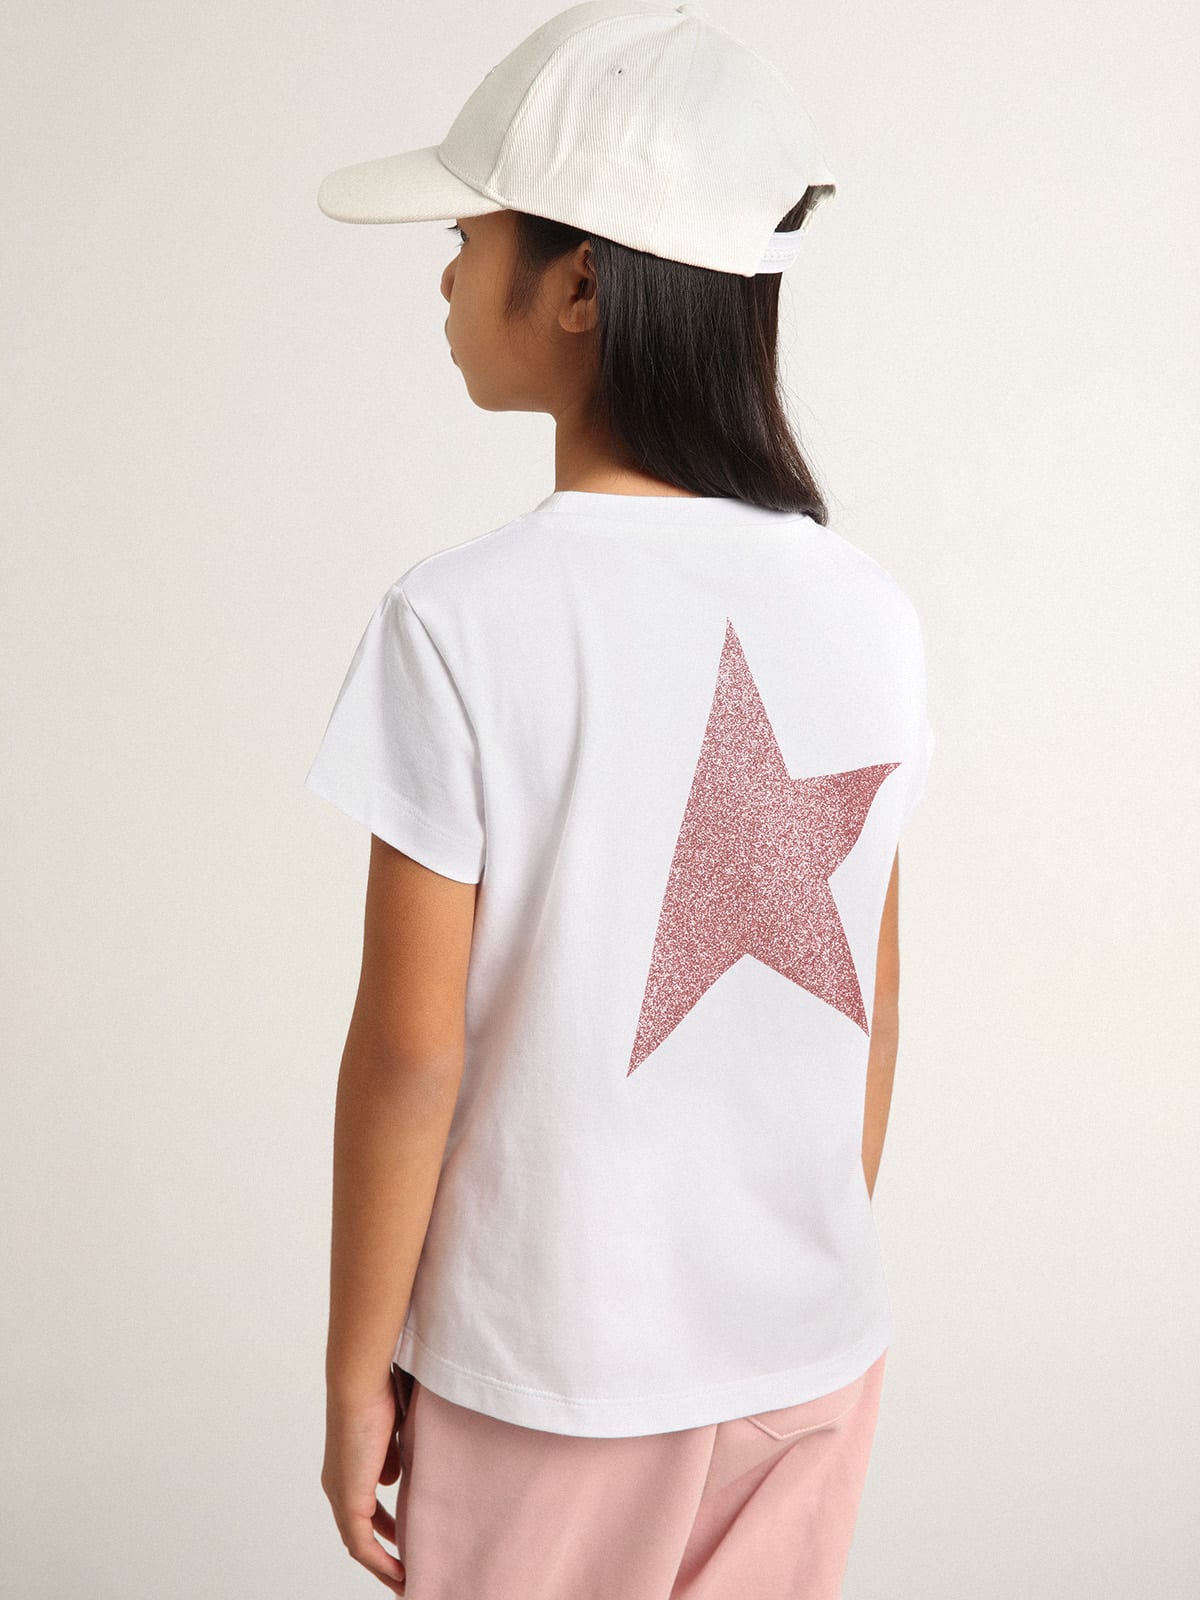 Golden Goose - Weißes T-Shirt aus der Star Collection mit Logo und Maxistern aus rosa Glitzer in 